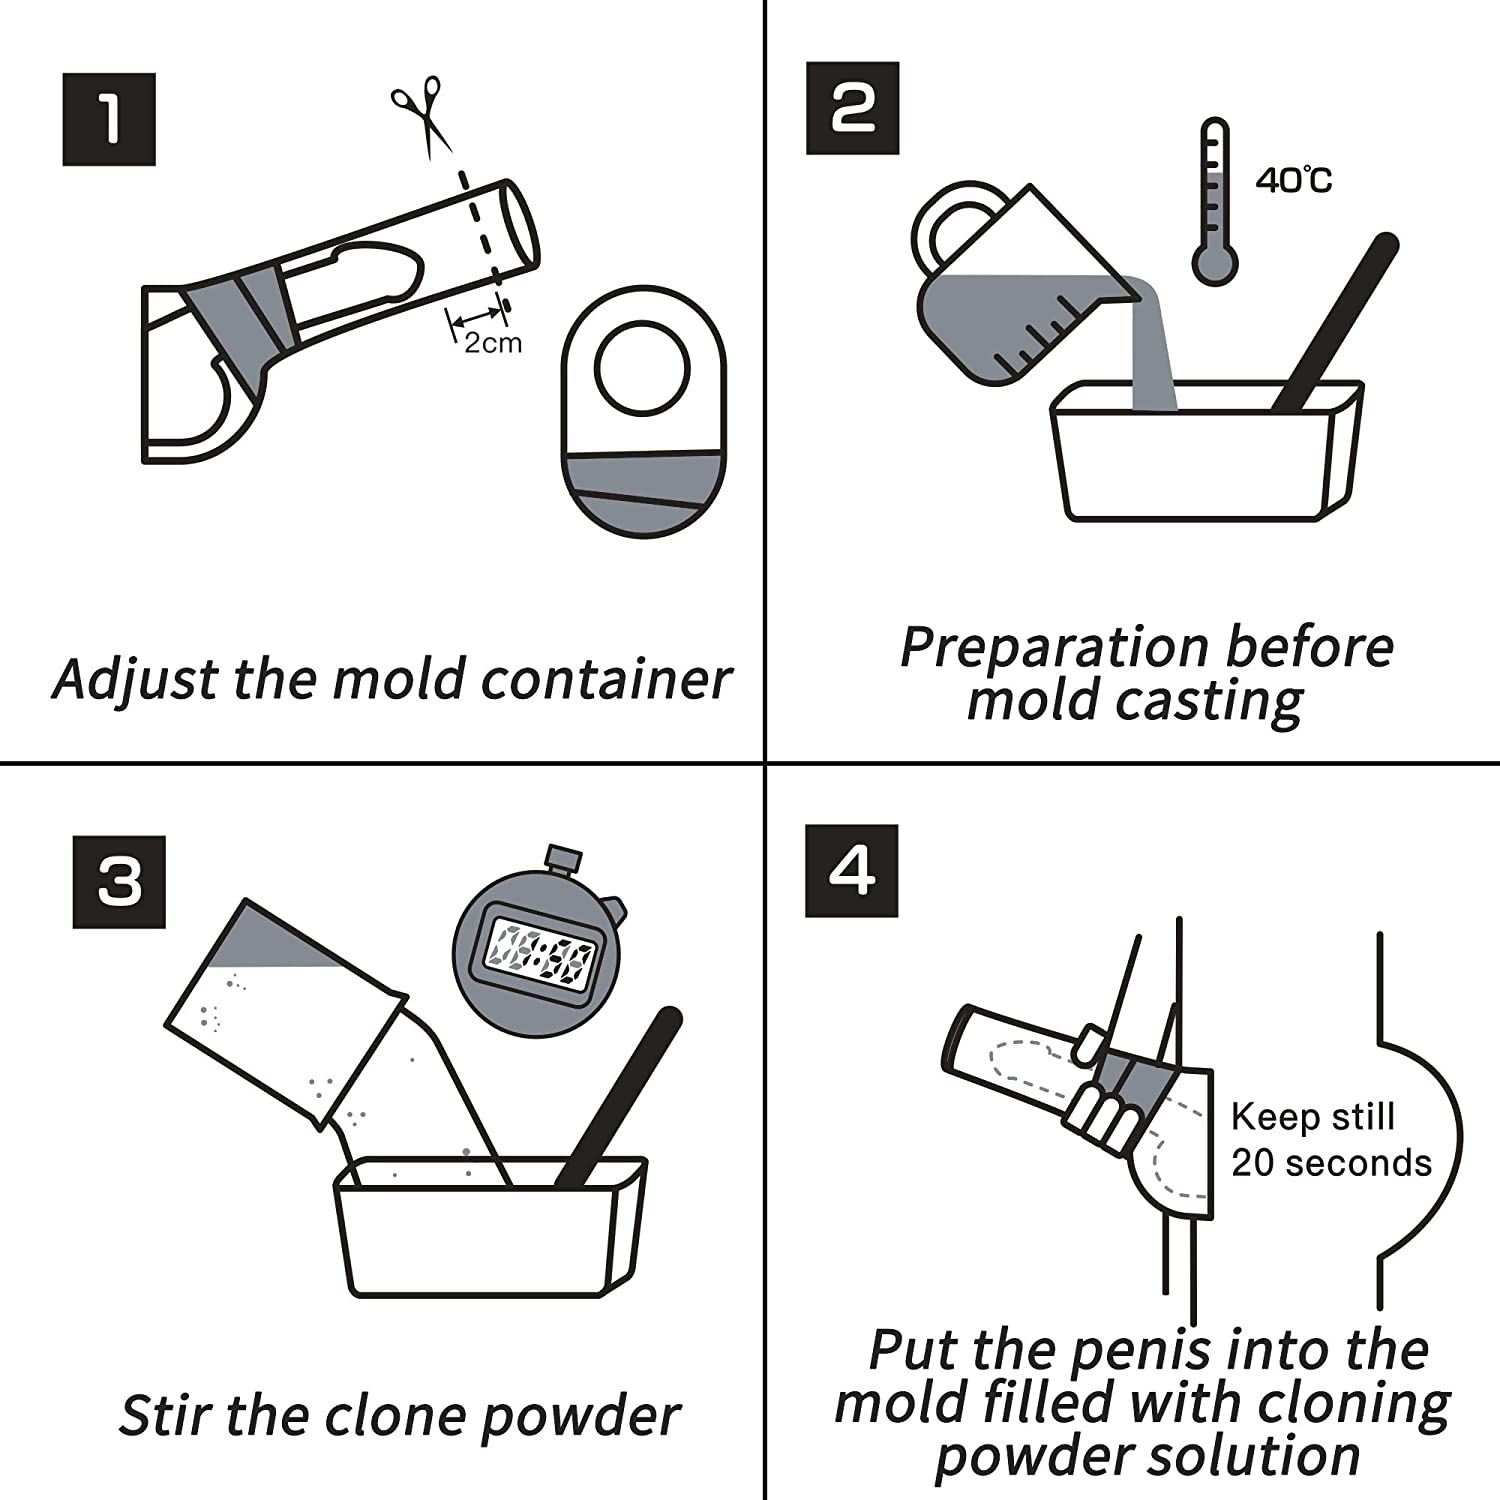 WeDol DIY Penis Casting Kit Liquid Silicone Clone Dildo Set with Heati pic pic